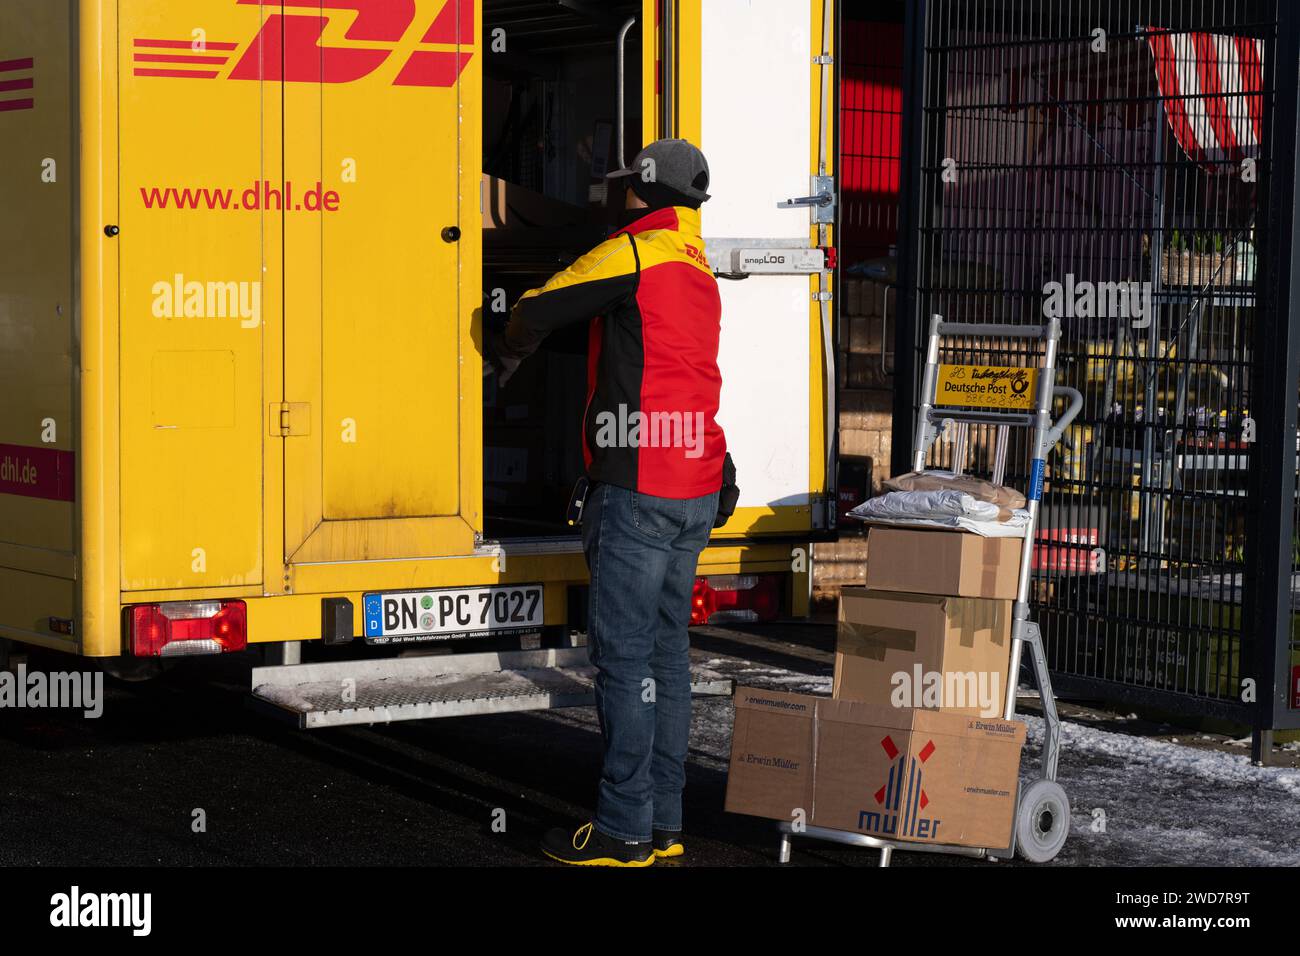 Lieferdienst in Aktion: DHL-Zusteller bereitet Paketlieferung bei REWE vor. , Deutschland, Rheinland-Pfalz, Speyer, 19.01.2024, Auf dem Foto ist ein DHL-Zusteller zu sehen, der neben einem offenen, gelben Lieferwagen steht und Pakete auf einem Transportwagen vor sich hat. Im Hintergrund ist ein REWE-Schild erkennbar, was darauf hinweist, dass die Lieferung in der Nähe eines REWE-Supermarktes stattfindet. *** Delivery service in action DHL delivery driver prepares parcel delivery at REWE, Germany, Rhineland-Palatinate, Speyer, 19 01 2024, The photo shows a DHL delivery driver standing next to a Stock Photo